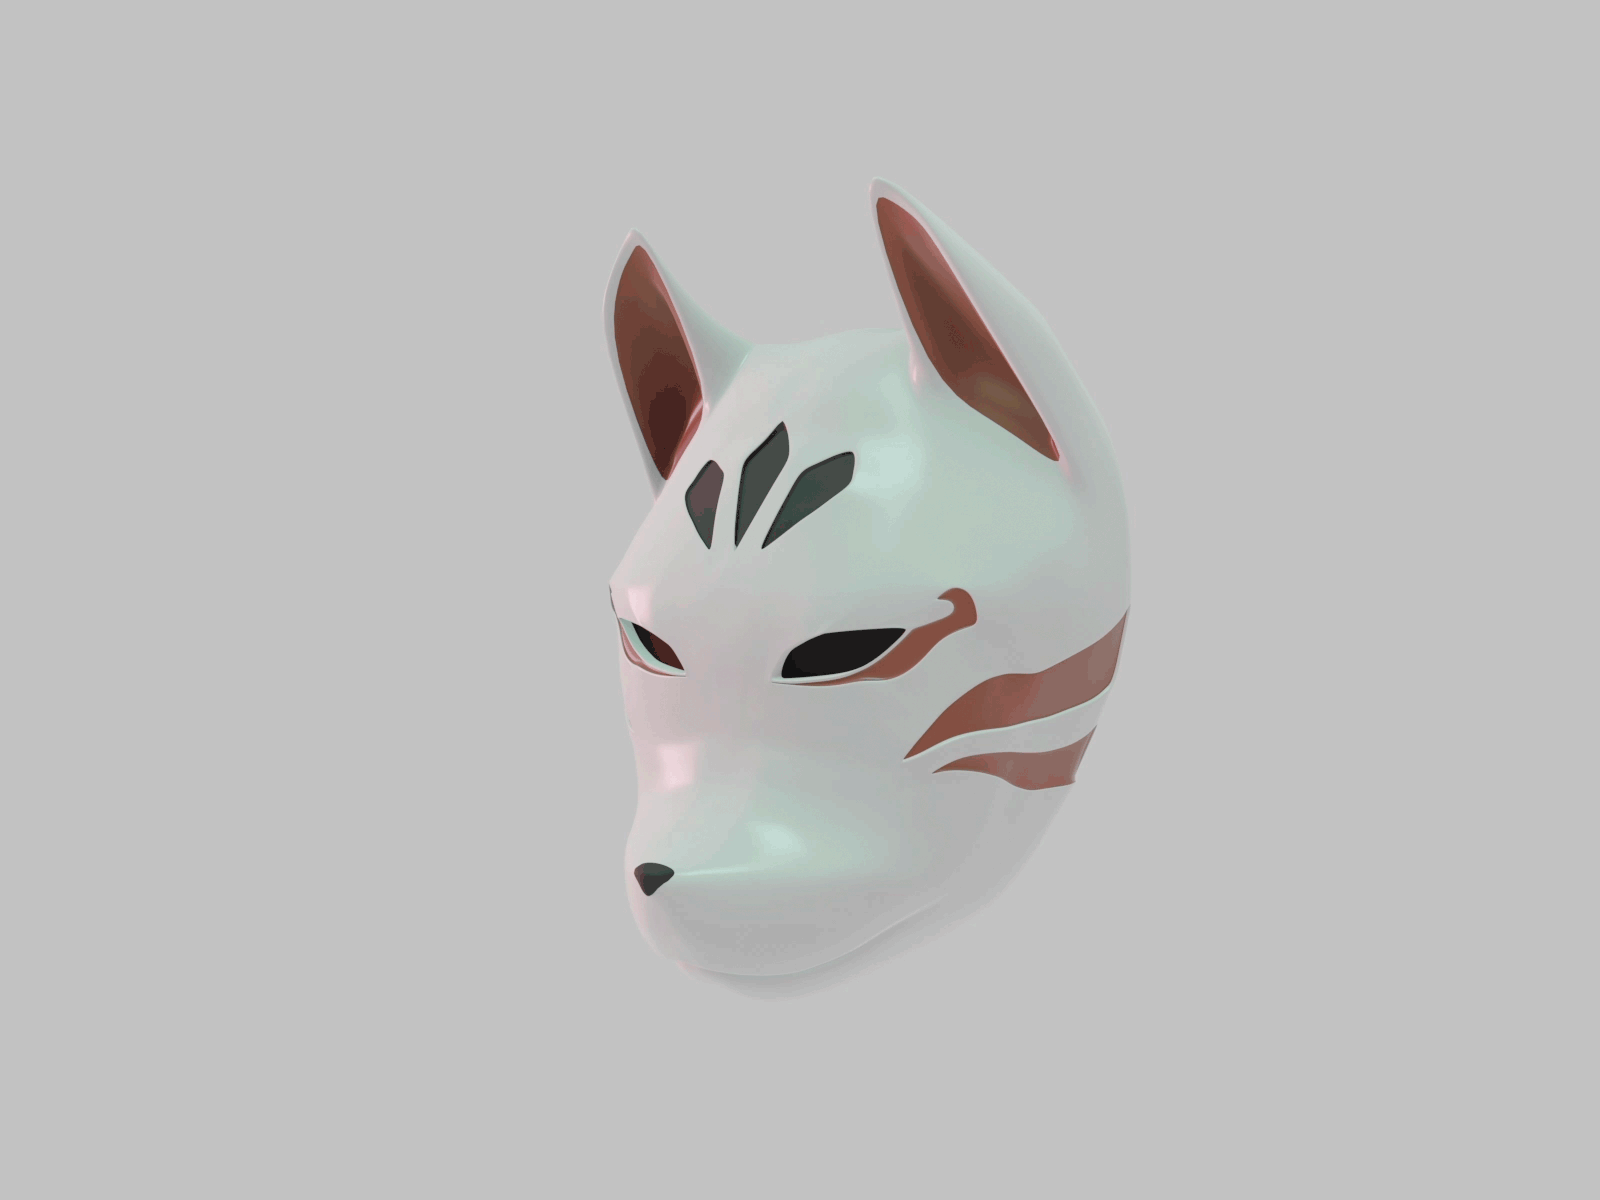 Fox Mask 3d 3d animation 3d model 3d modelling 3dart blender blender3d fox japan kitsune